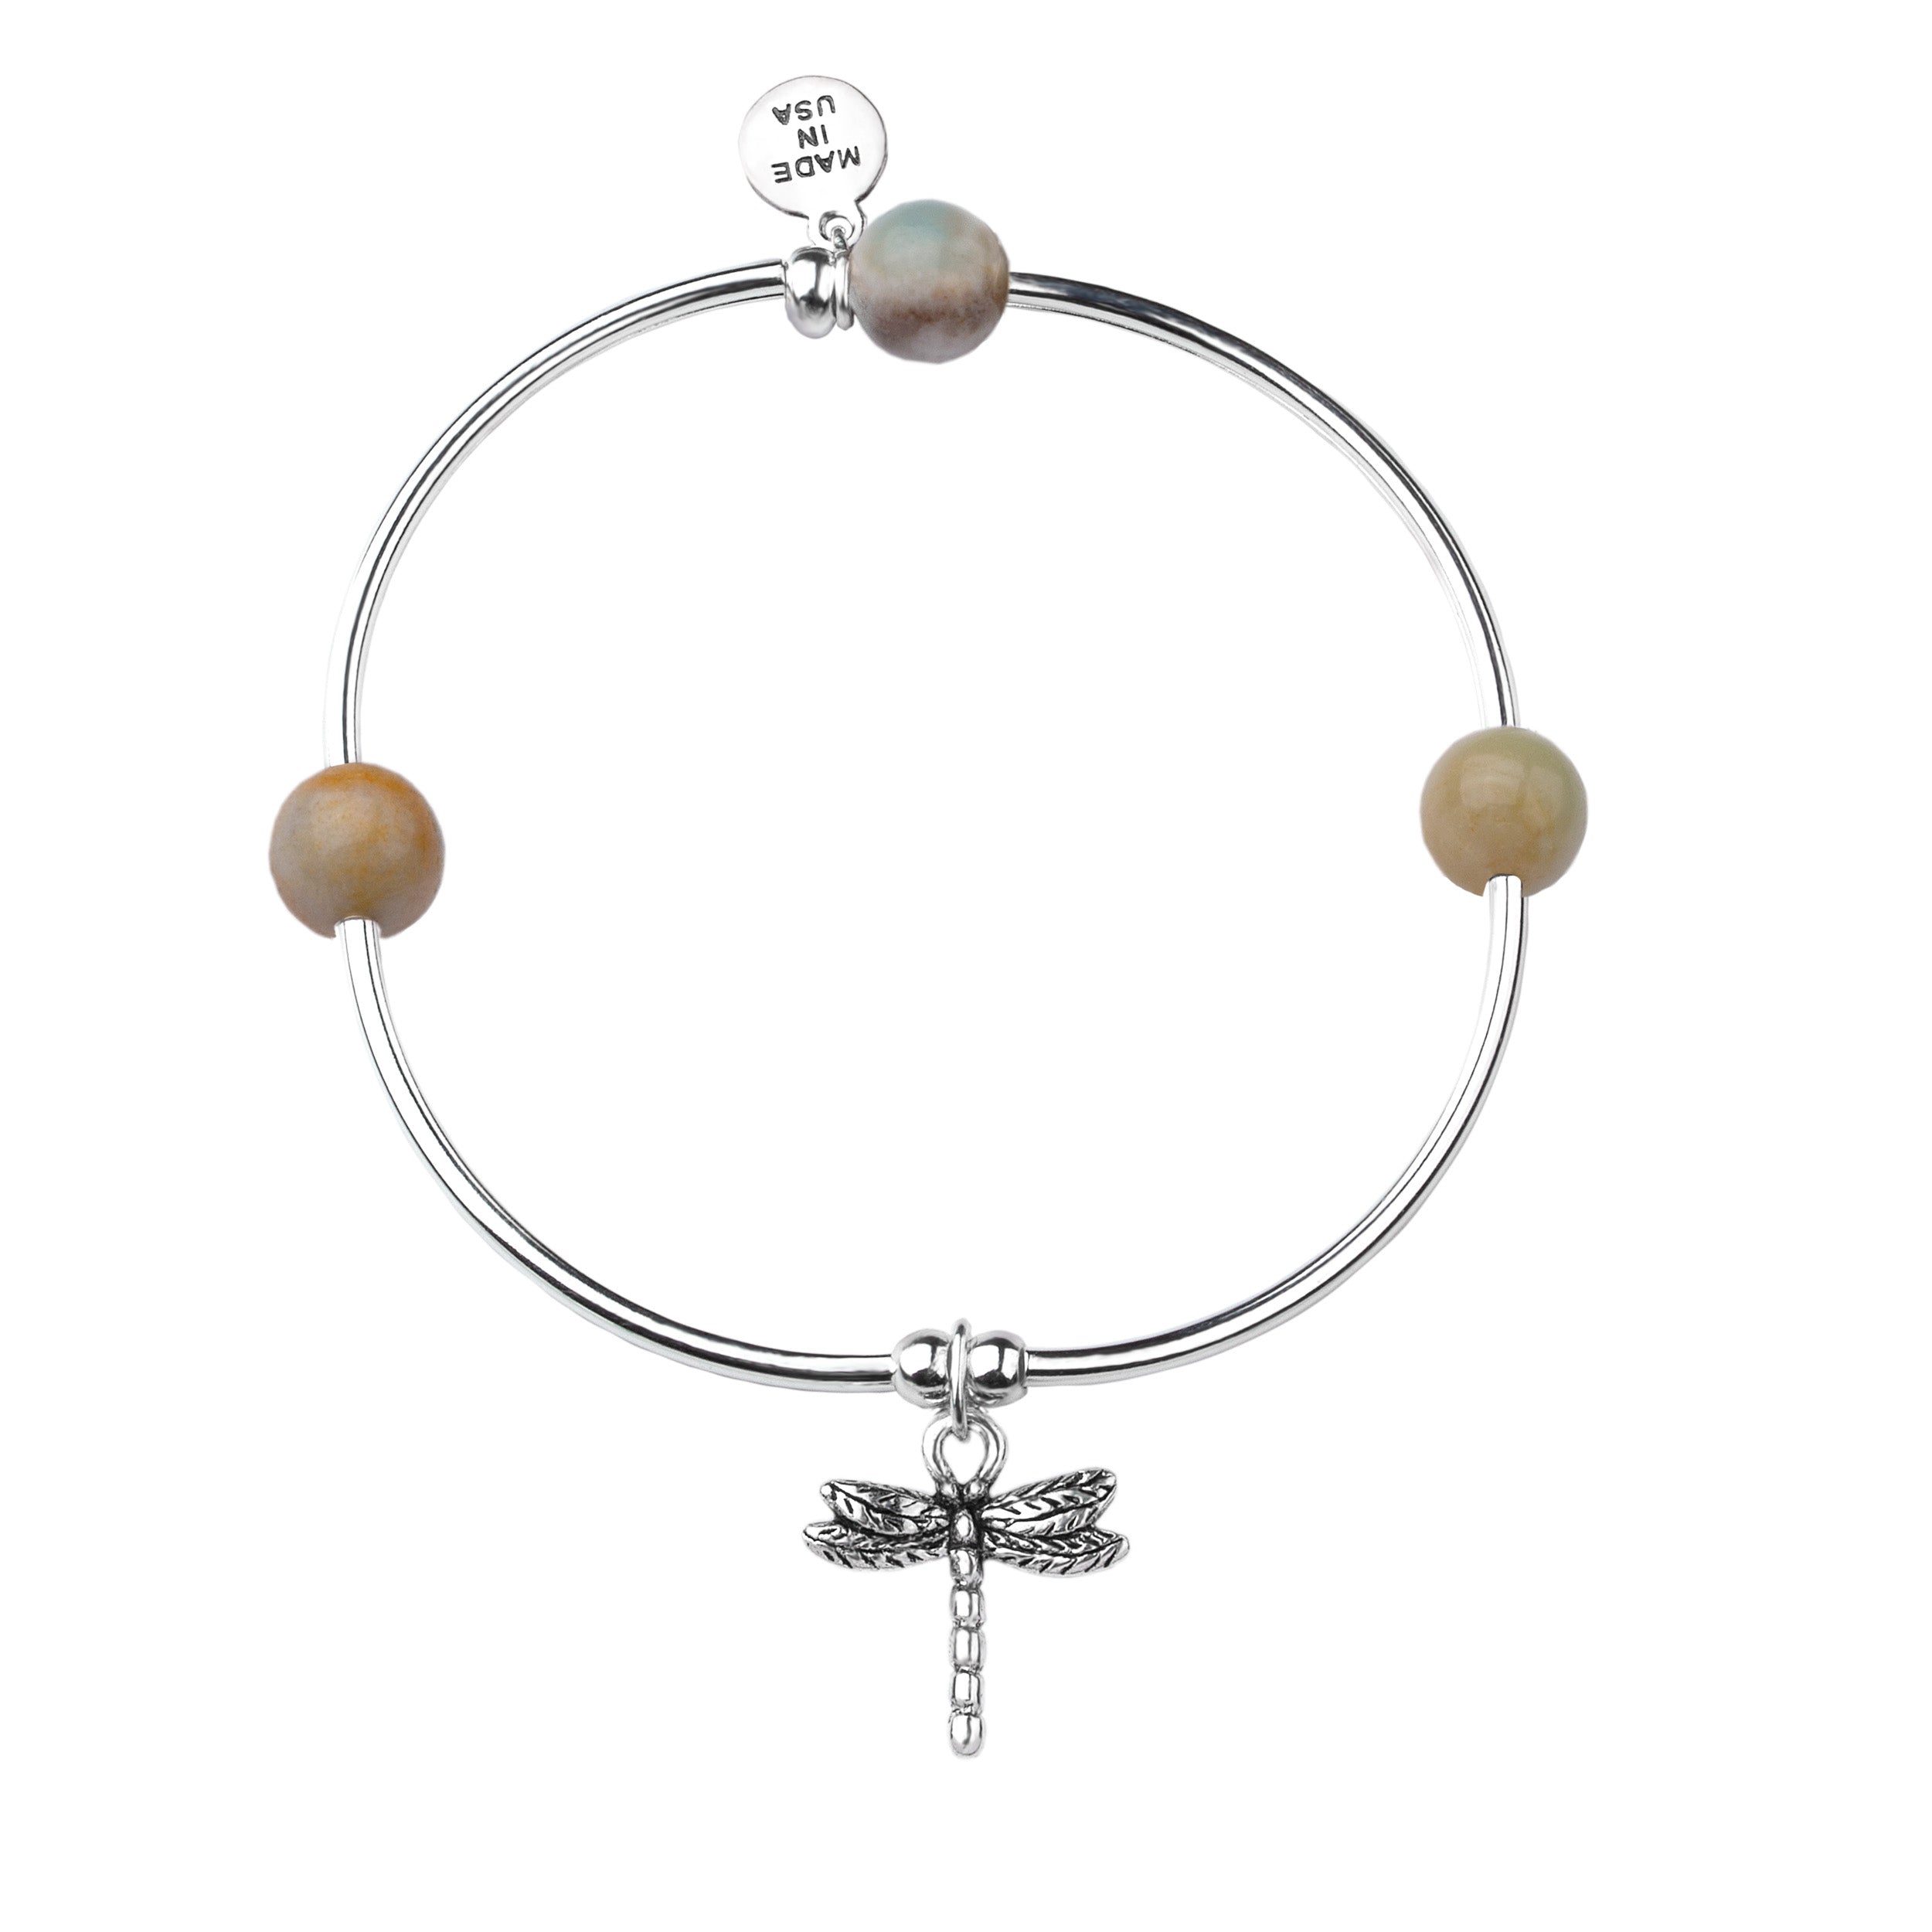 dragonfly charm bracelet  Jewelry Tiffany jewelry Dragonfly jewelry